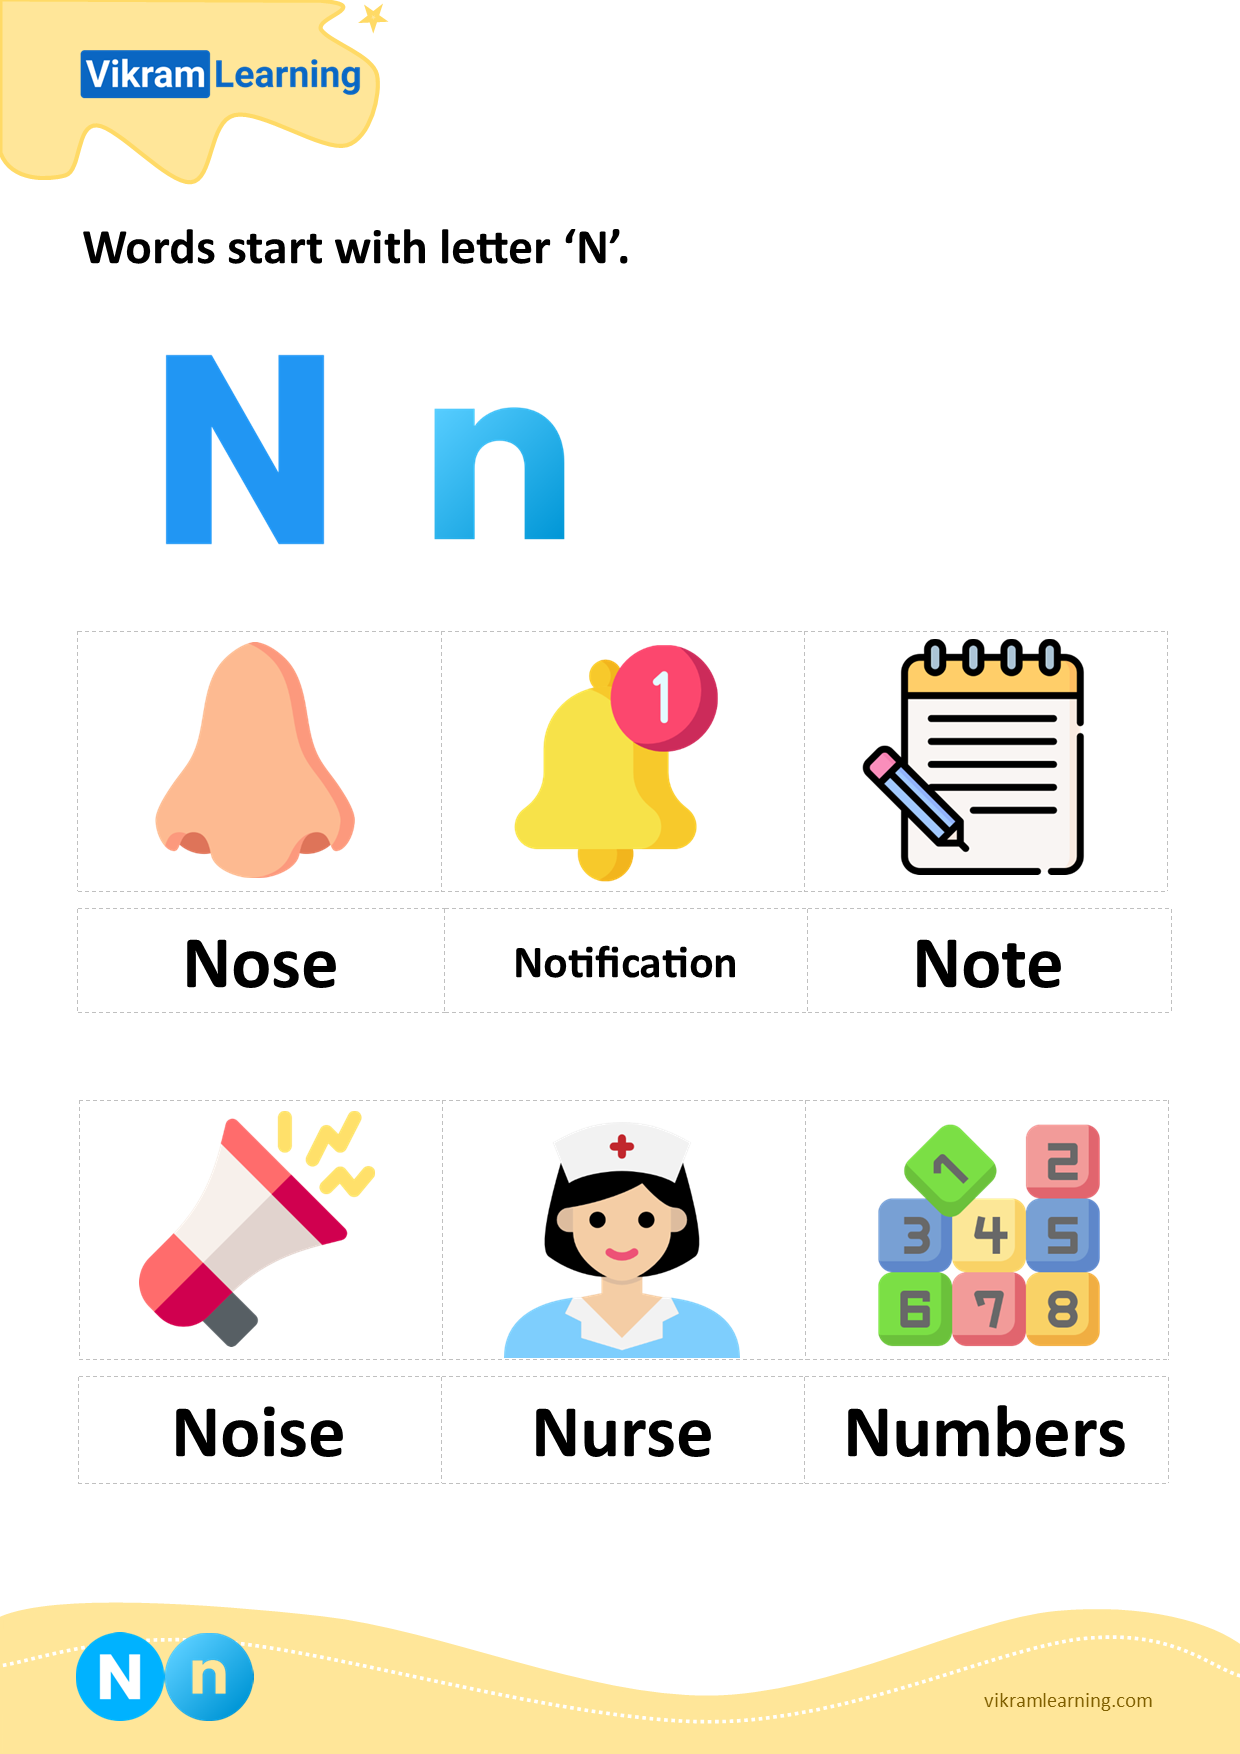 Download words start with letter 'n' worksheets | vikramlearning.com